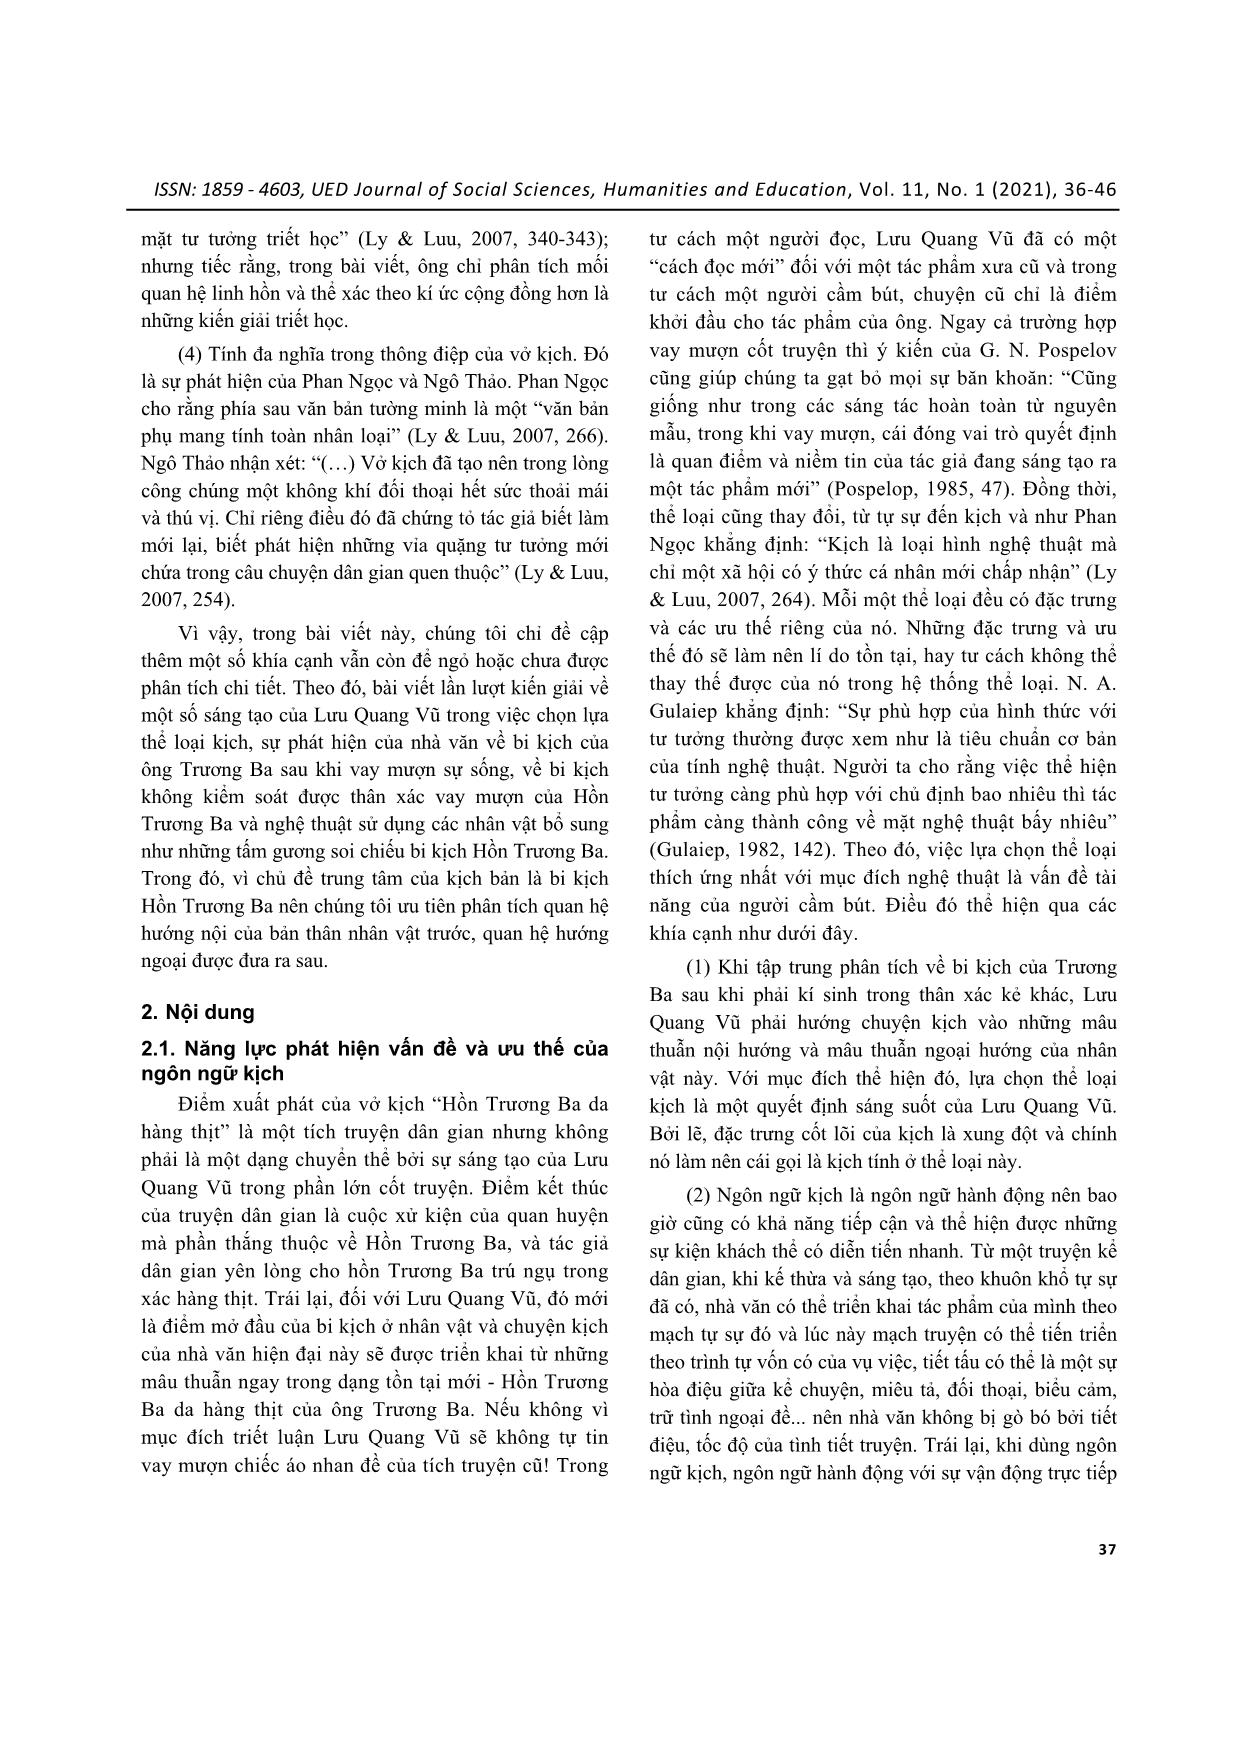 Ý tưởng triết luận và sáng tạo nghệ thuật của Lưu Quang Vũ trong kịch bản “Hồn Trương Ba da hàng thịt” trang 2